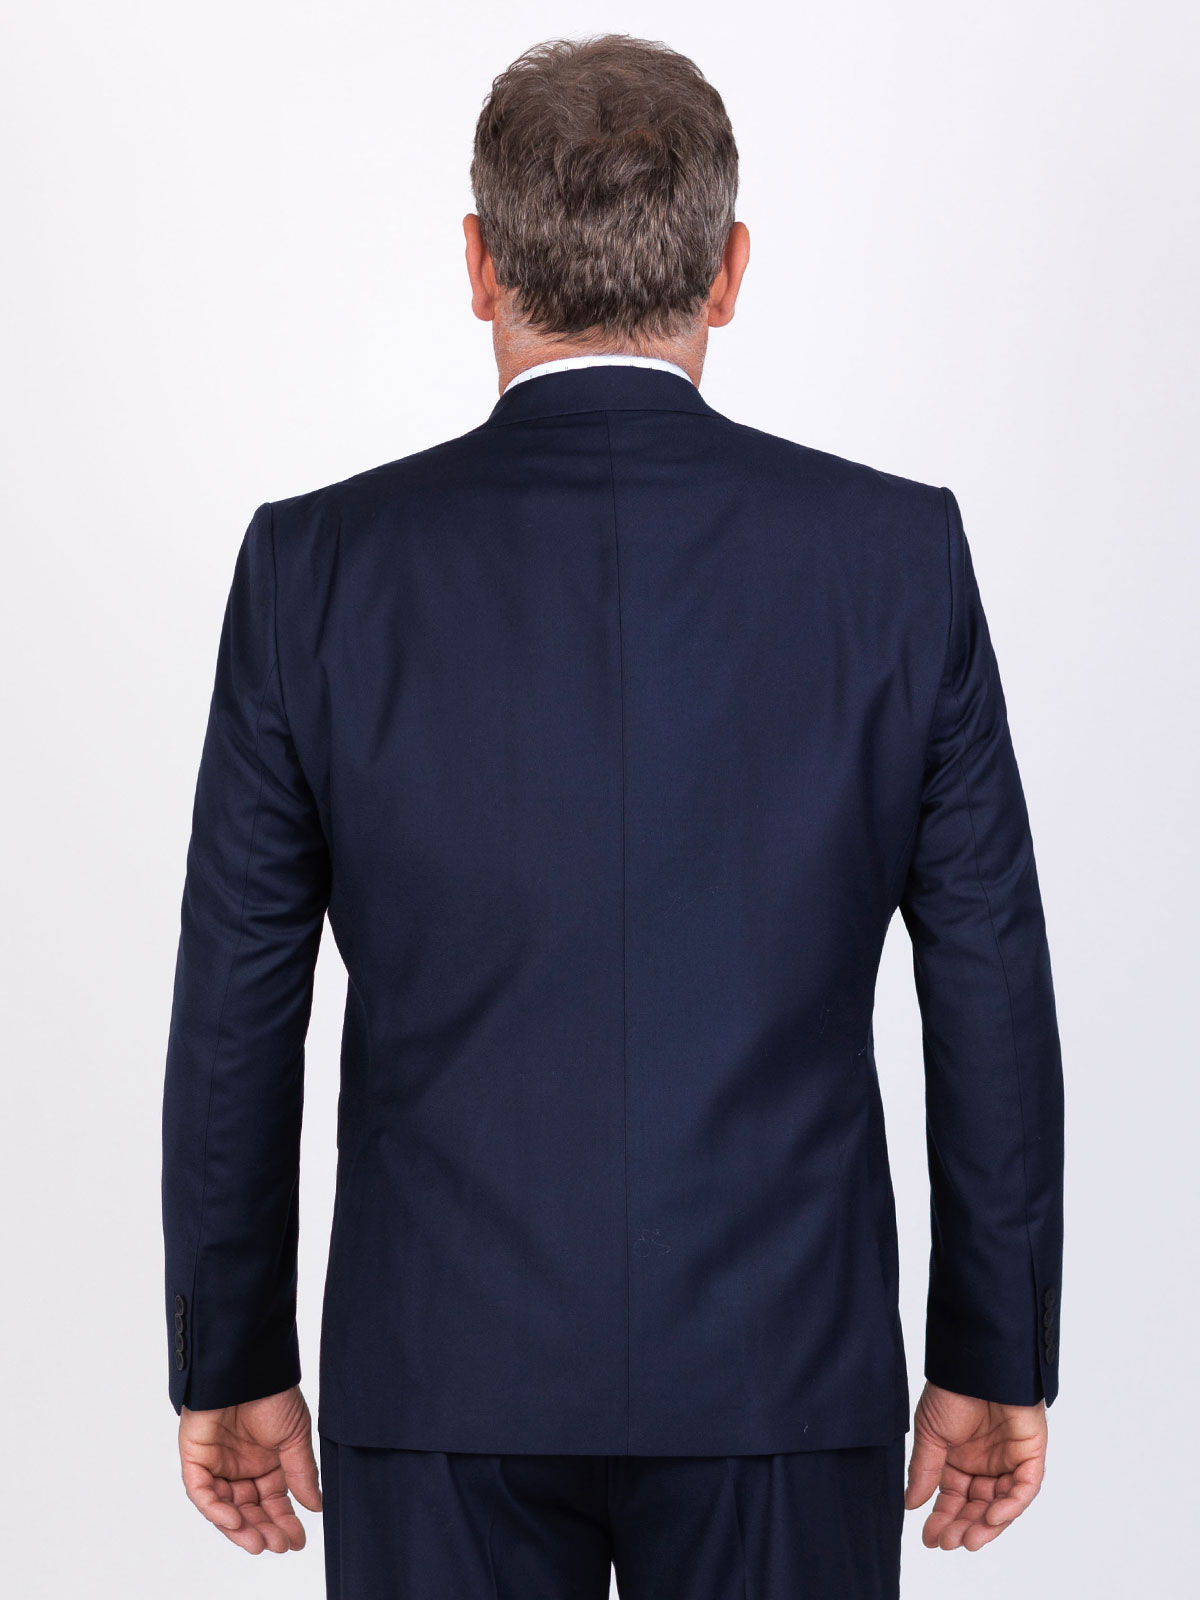 Jachetă pentru bărbați în albastru max - 64129 € 141.73 img3